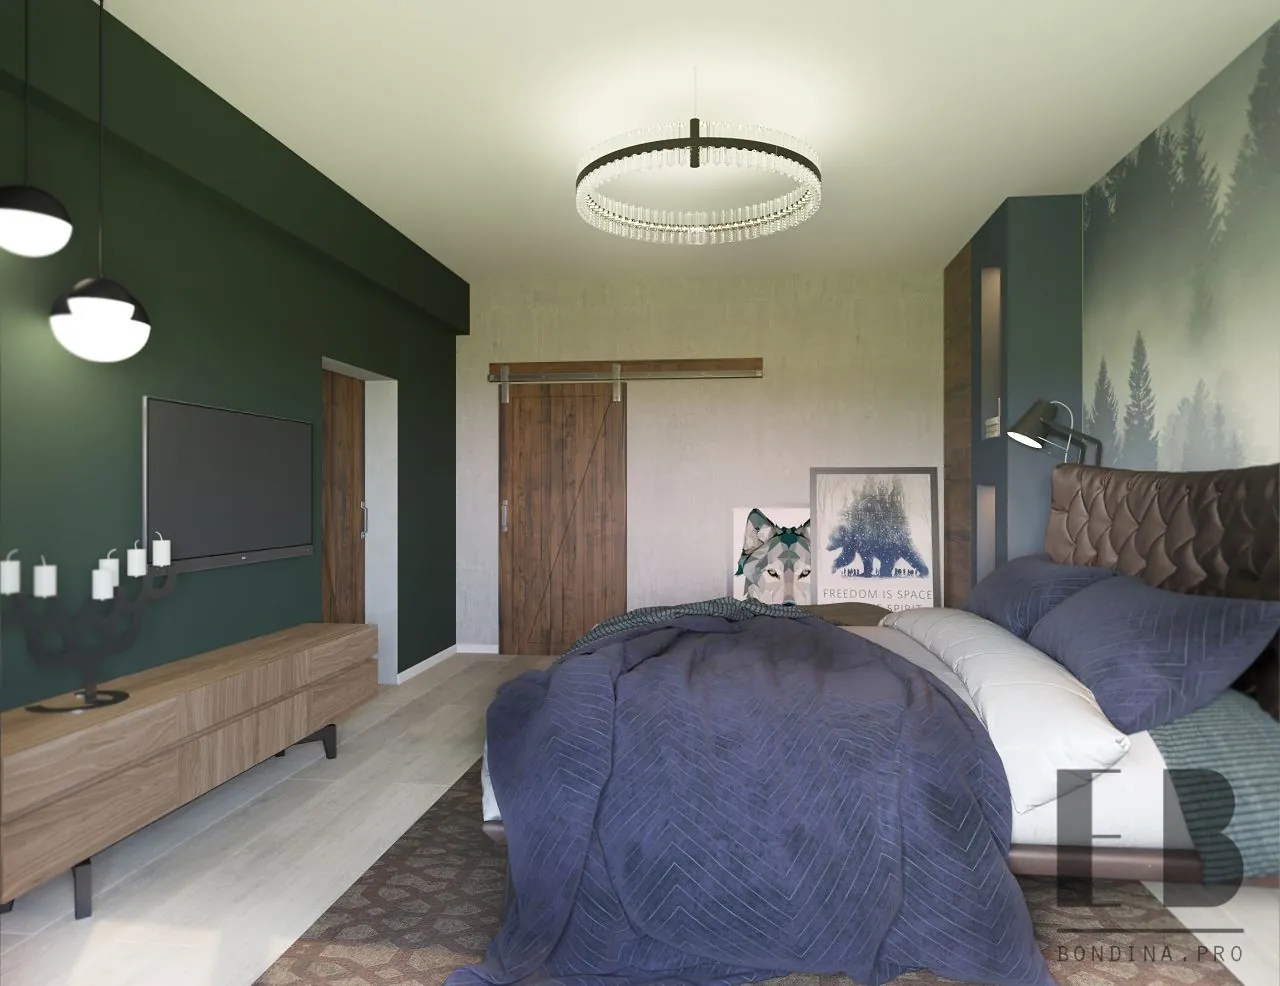 Зеленая спальня с фото обоями - Дизайн интерьера спальни